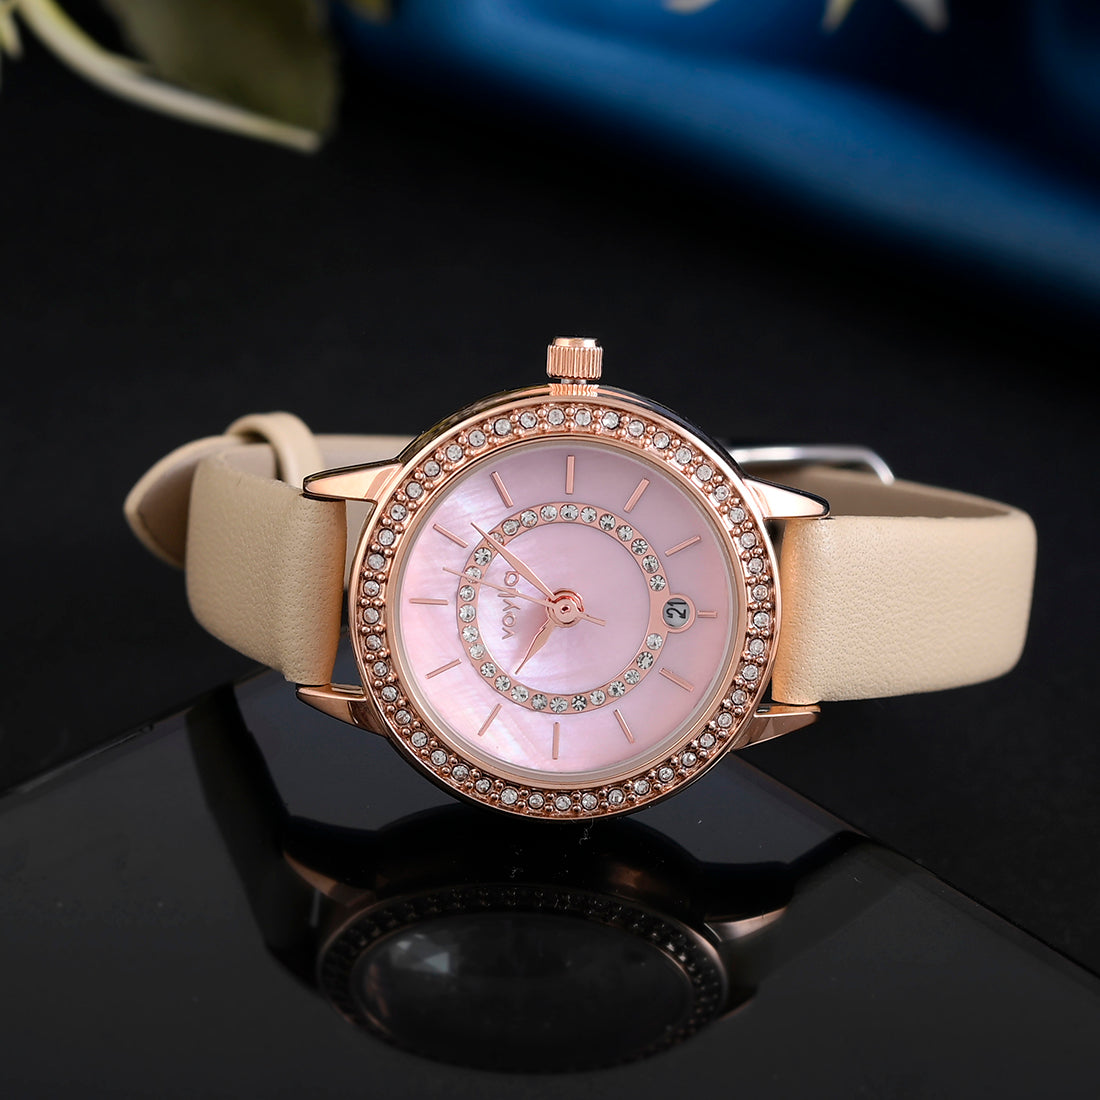 Voylla Gem Studded Pink Dial Watch - Voylla